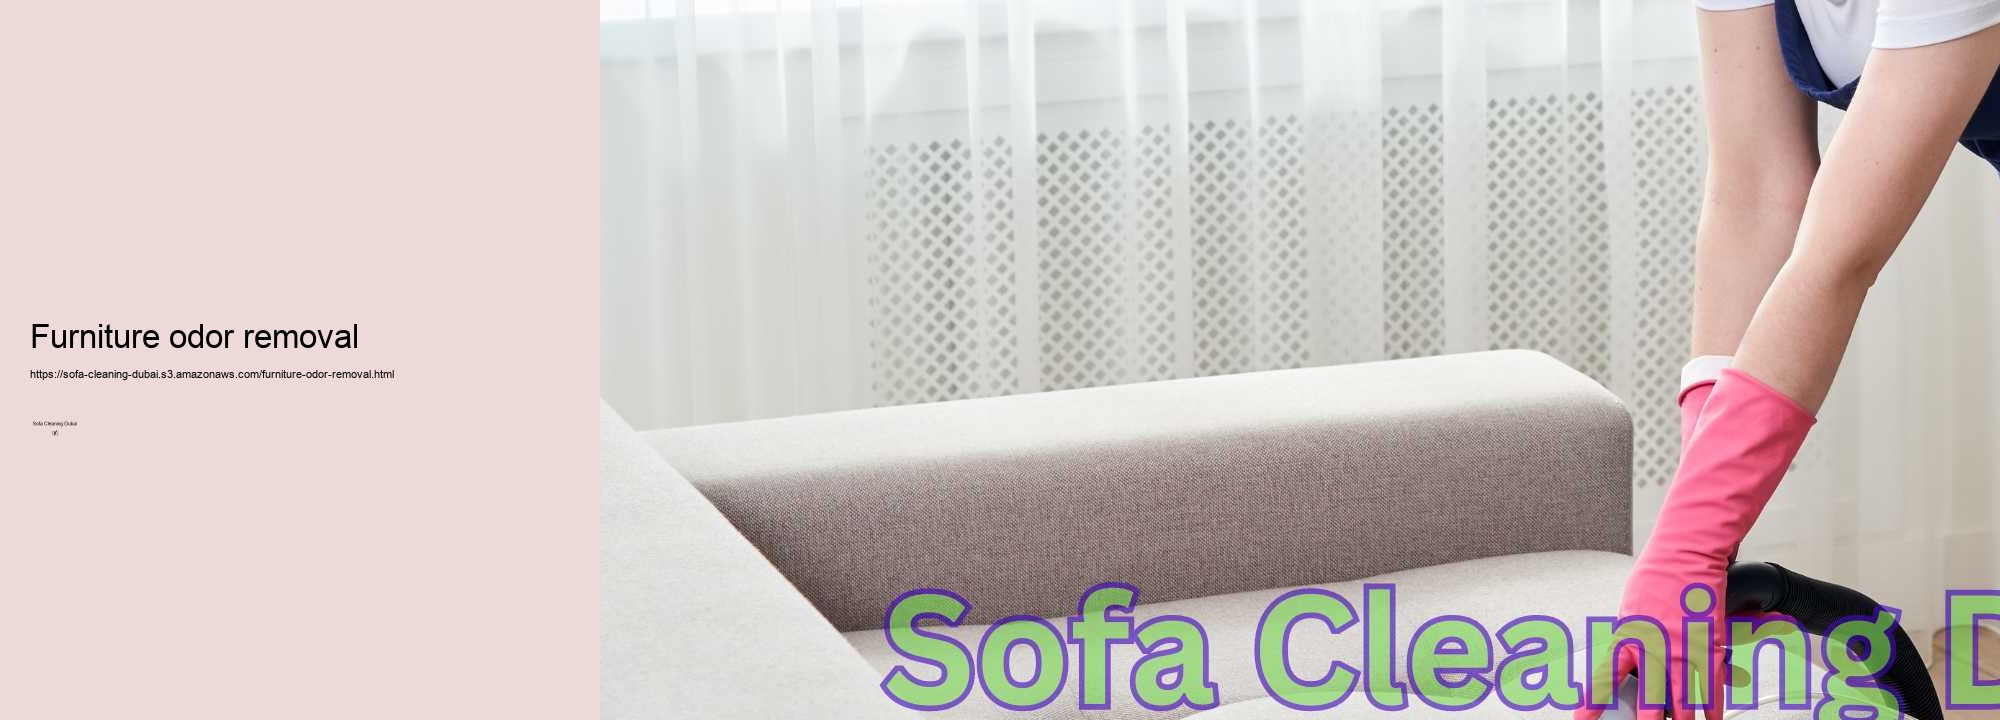 Furniture odor removal